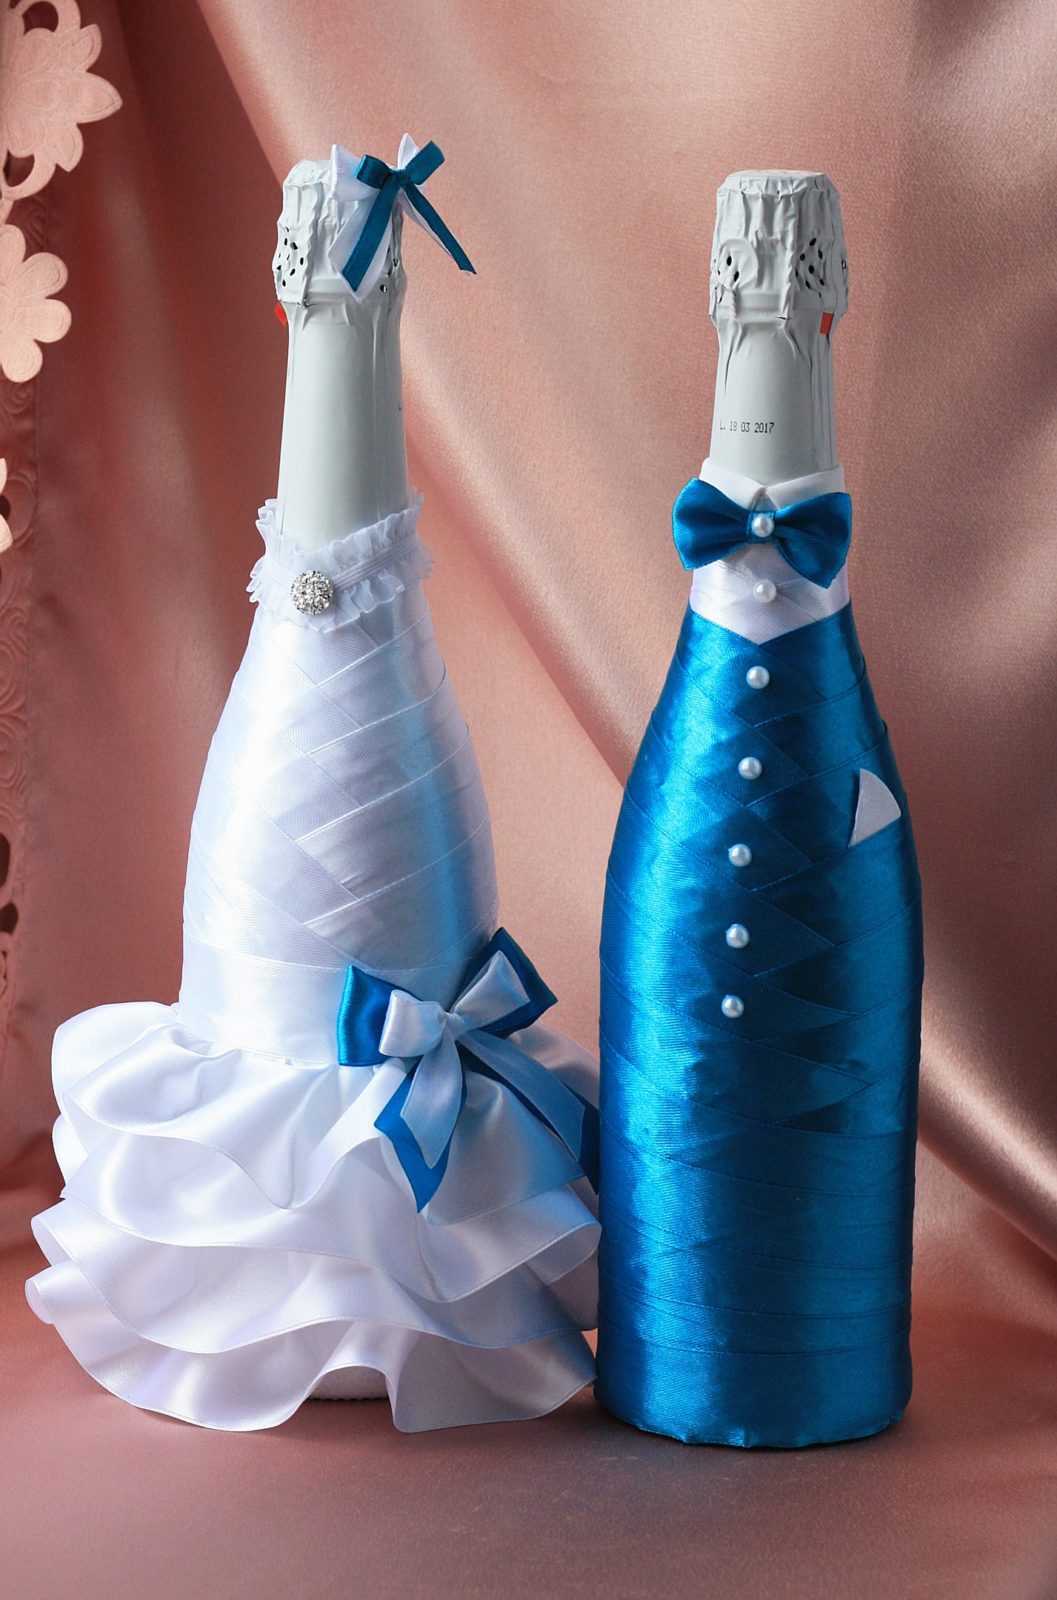 Пошаговая инструкция - как украсить бутылку шампанского лентами для свадьбы Какие инструменты и материалы нужно подготовить для оформления